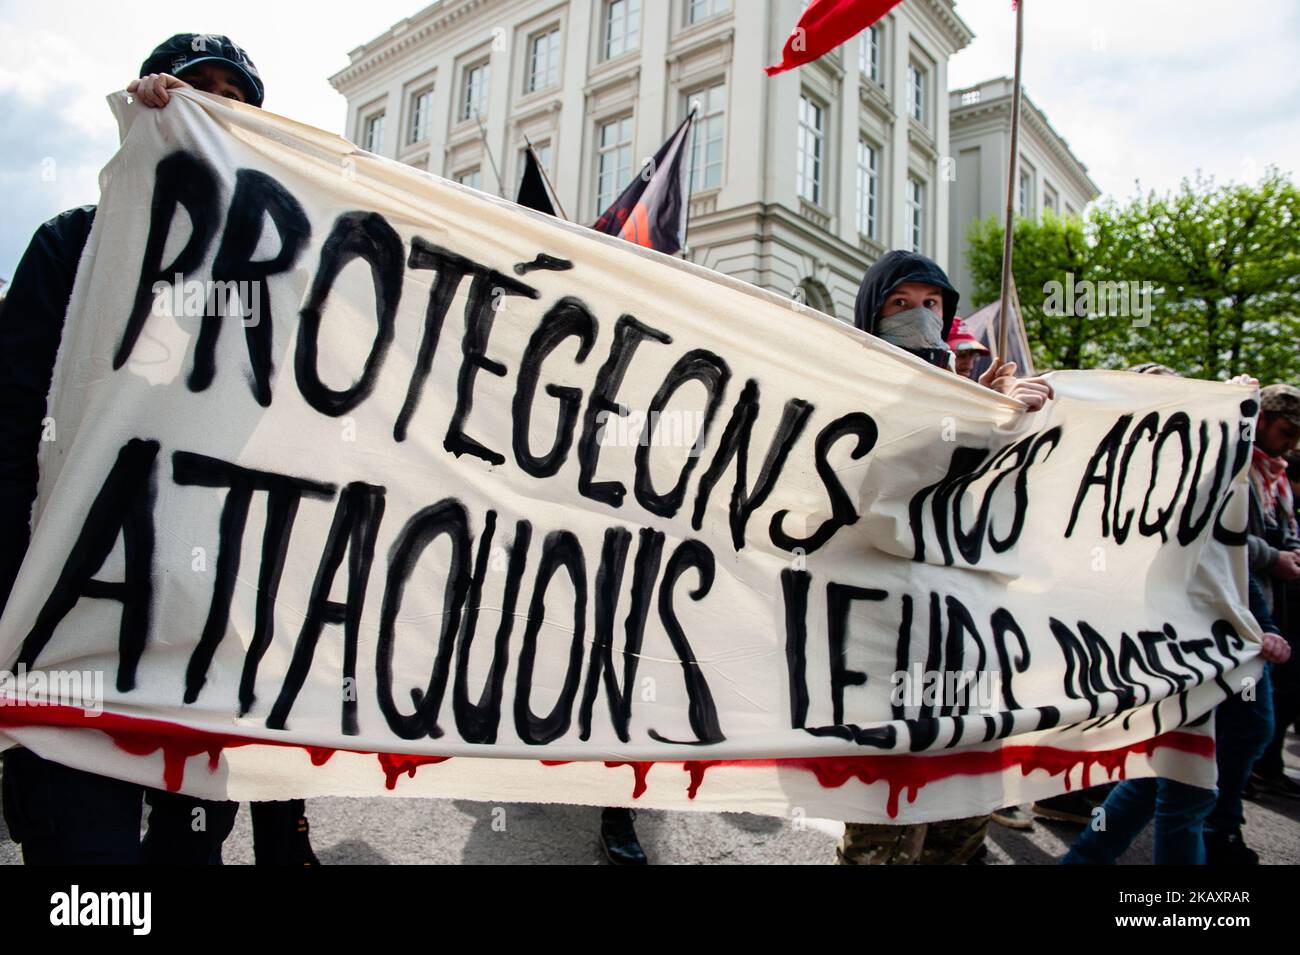 Am 1.. Mai 2018 versammelten sich mehrere Gewerkschafter auf dem Place Poelaert, der näher am Justizpalast in Brüssel, Belgien, liegt. Die Demostration marschierte auf dem Platz Rouppe in Brüssel, um für menschenwürdige Arbeitsbedingungen und ihre Rechte als Arbeitnehmer zu kämpfen. Mit dieser massiven Demonstration wollen tausende Menschen neue Rechte erobern, wie Gehaltserhöhungen, Regularisierung mit oder ohne Papiere, Sexismus und Rassismus stoppen usw. (Foto: Romy Arroyo Fernandez/NurPhoto) Stockfoto